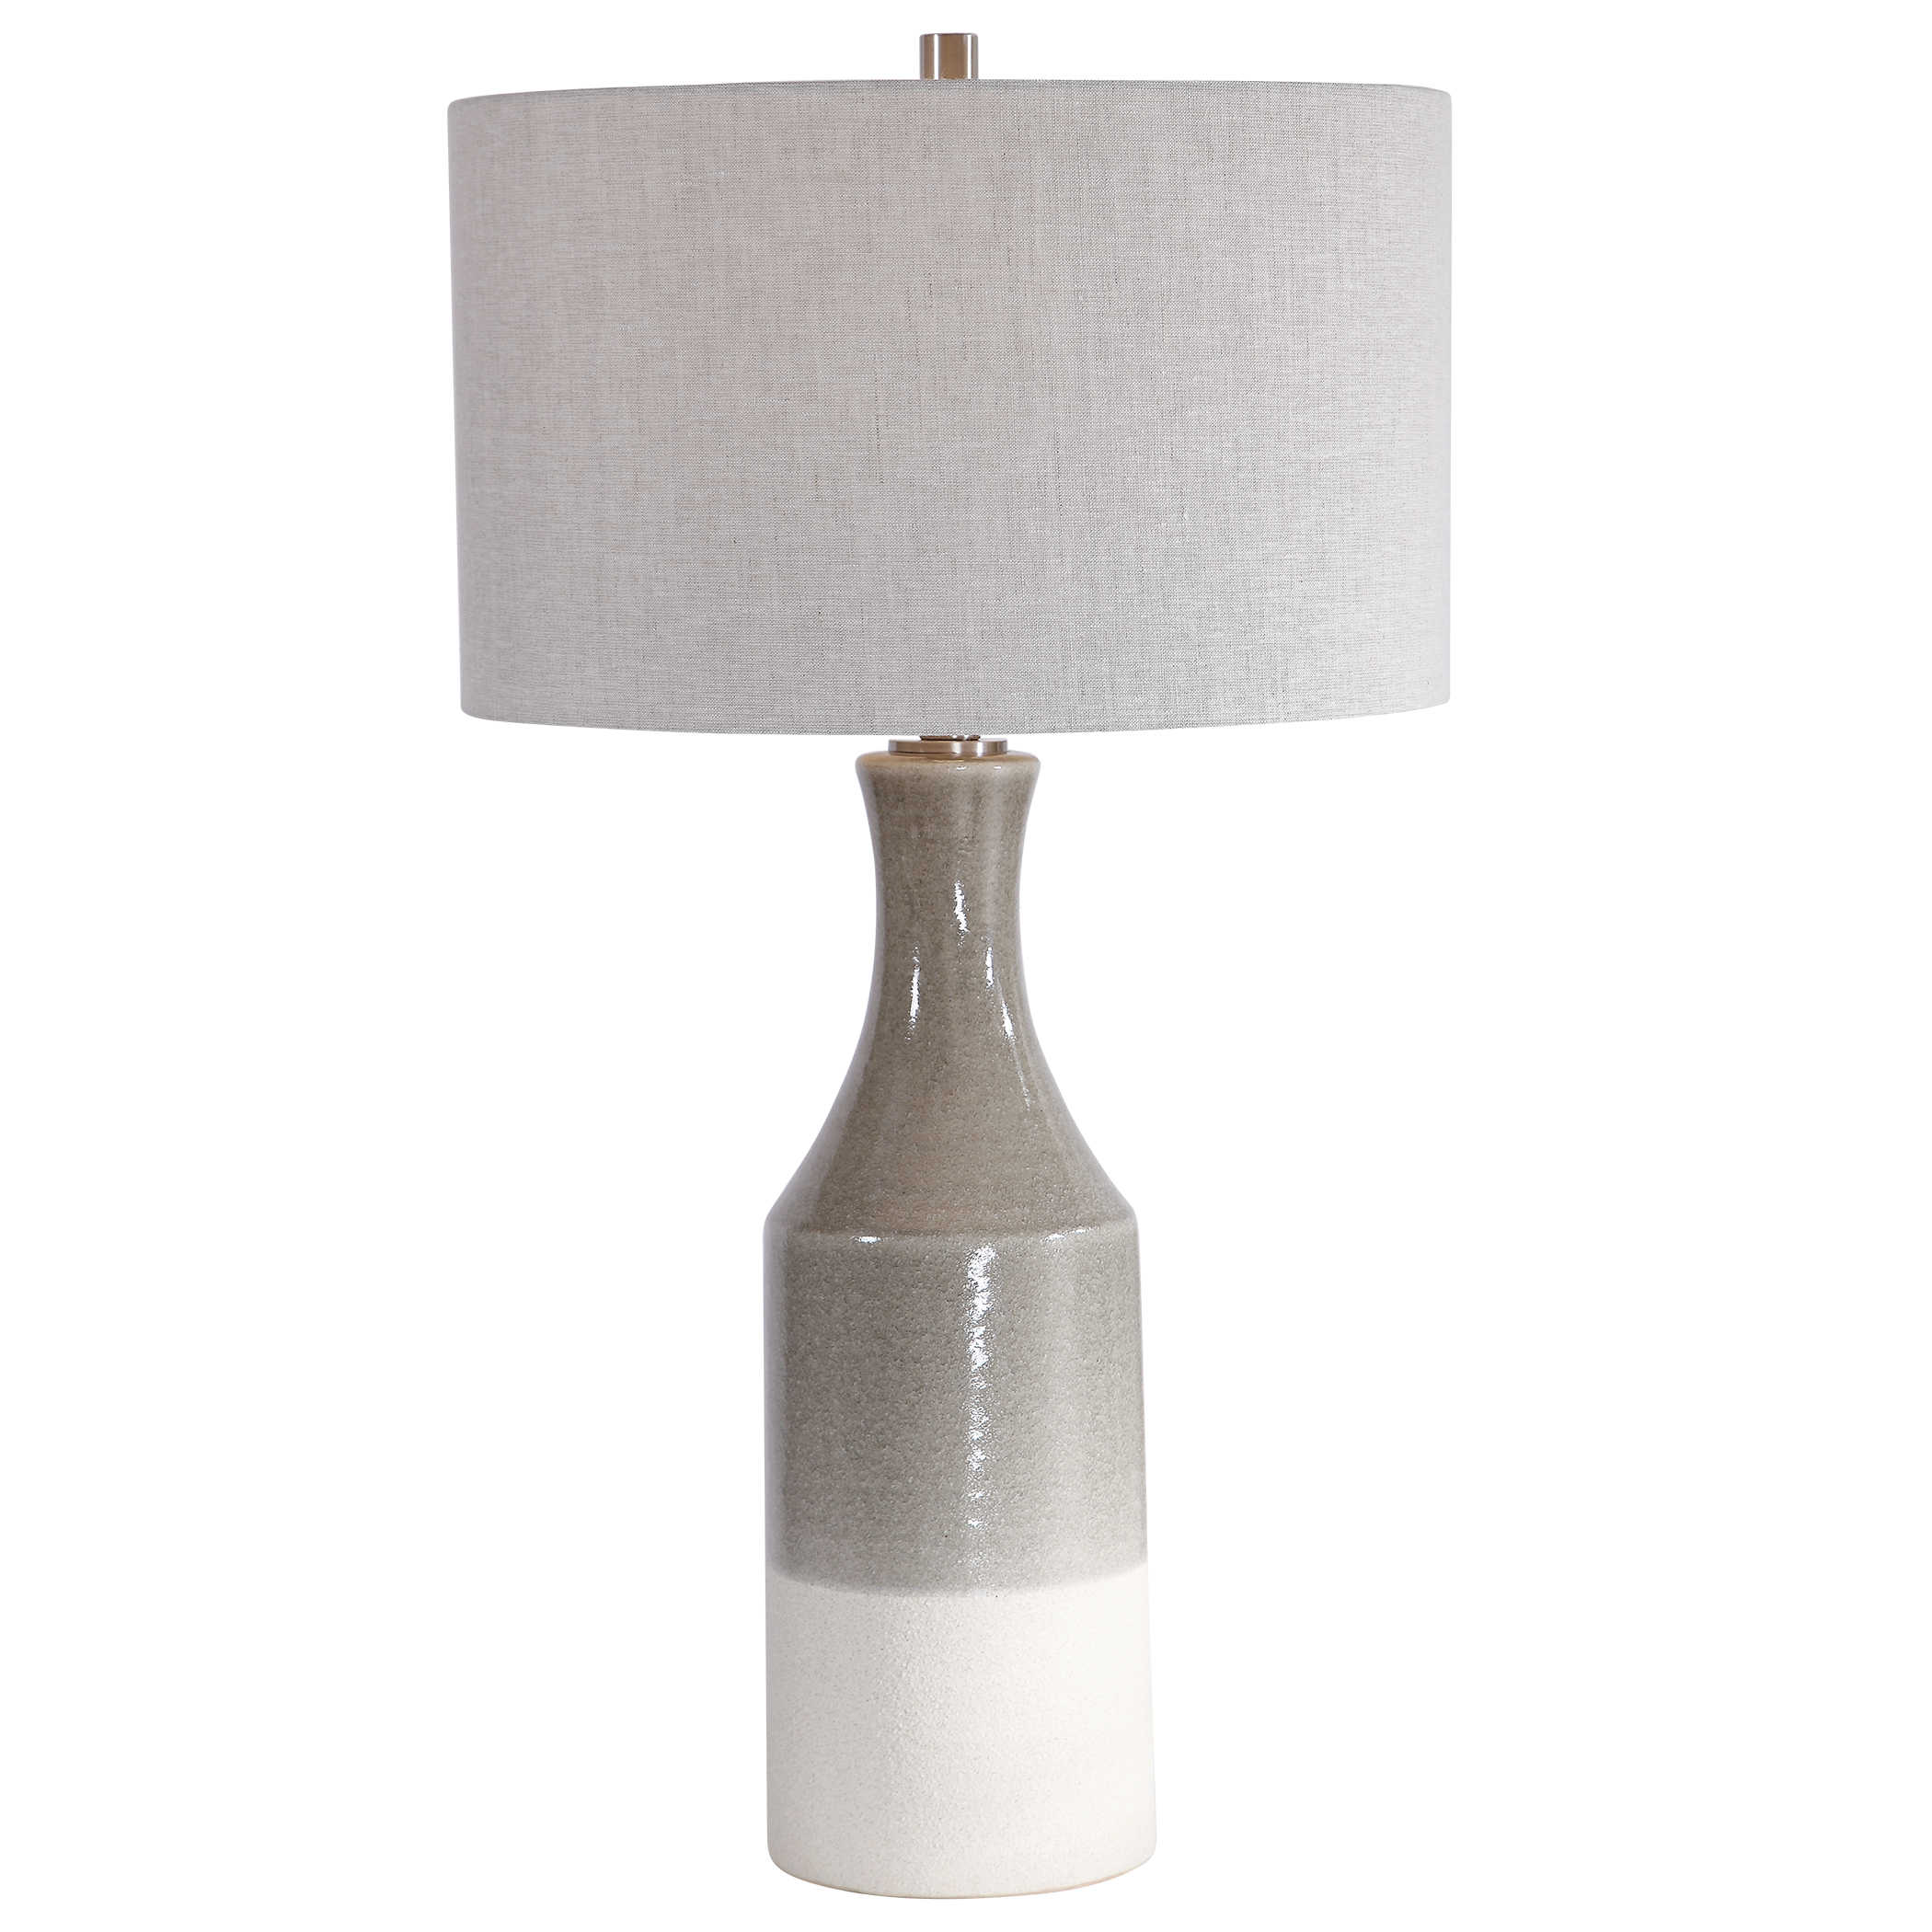 Настольная лампа SAVIN TABLE LAMP 28204 Uttermost США